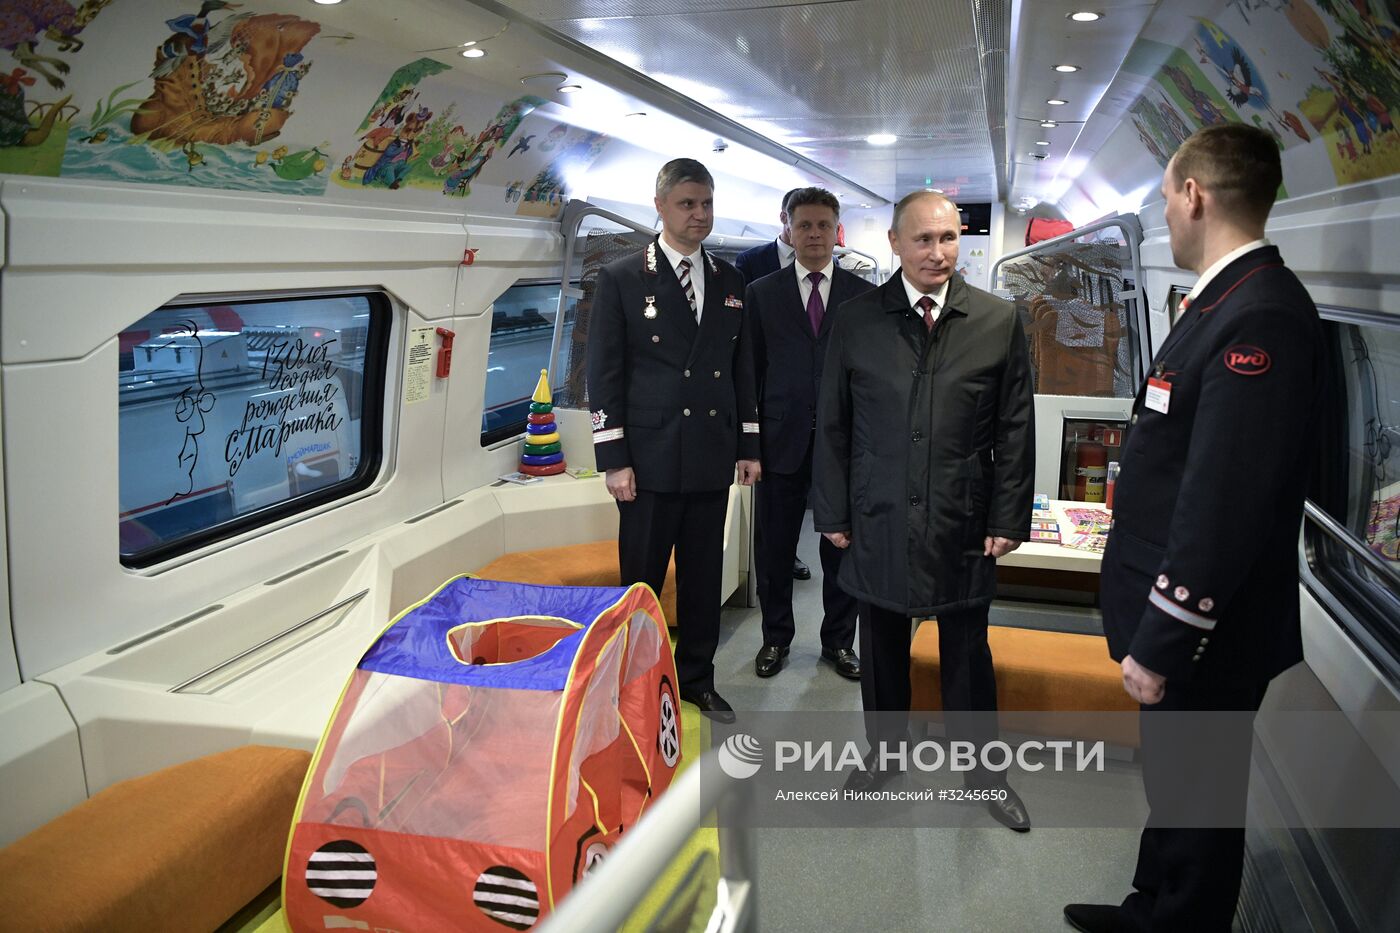 Президент РФ В. Путин посетил депо на железнодорожной станции "Москва-Киевская"